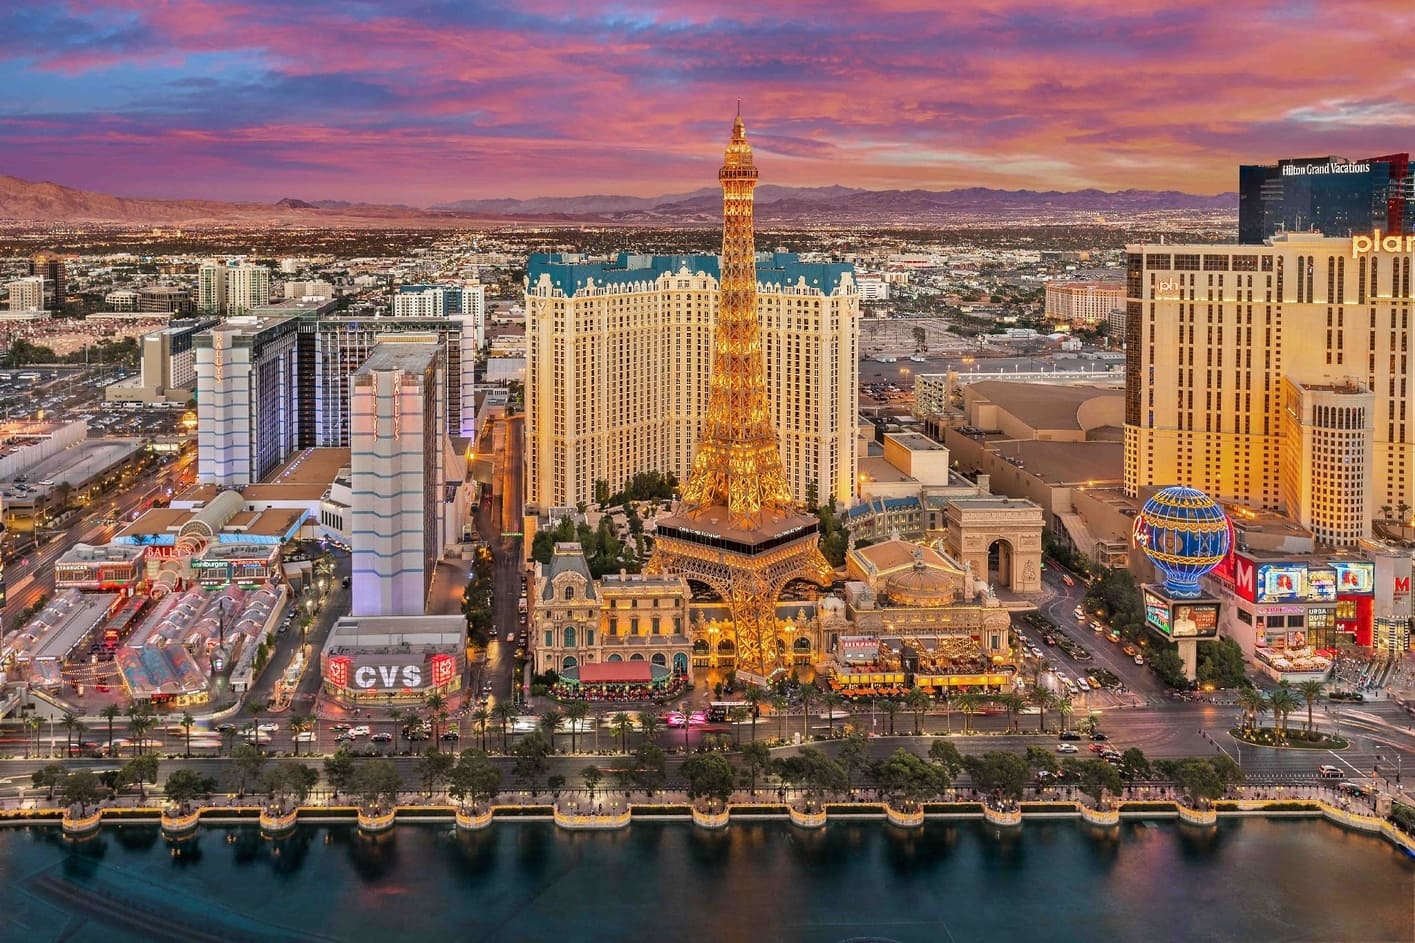 Paris Las Vegas, best hotel casinos in Las Vegas